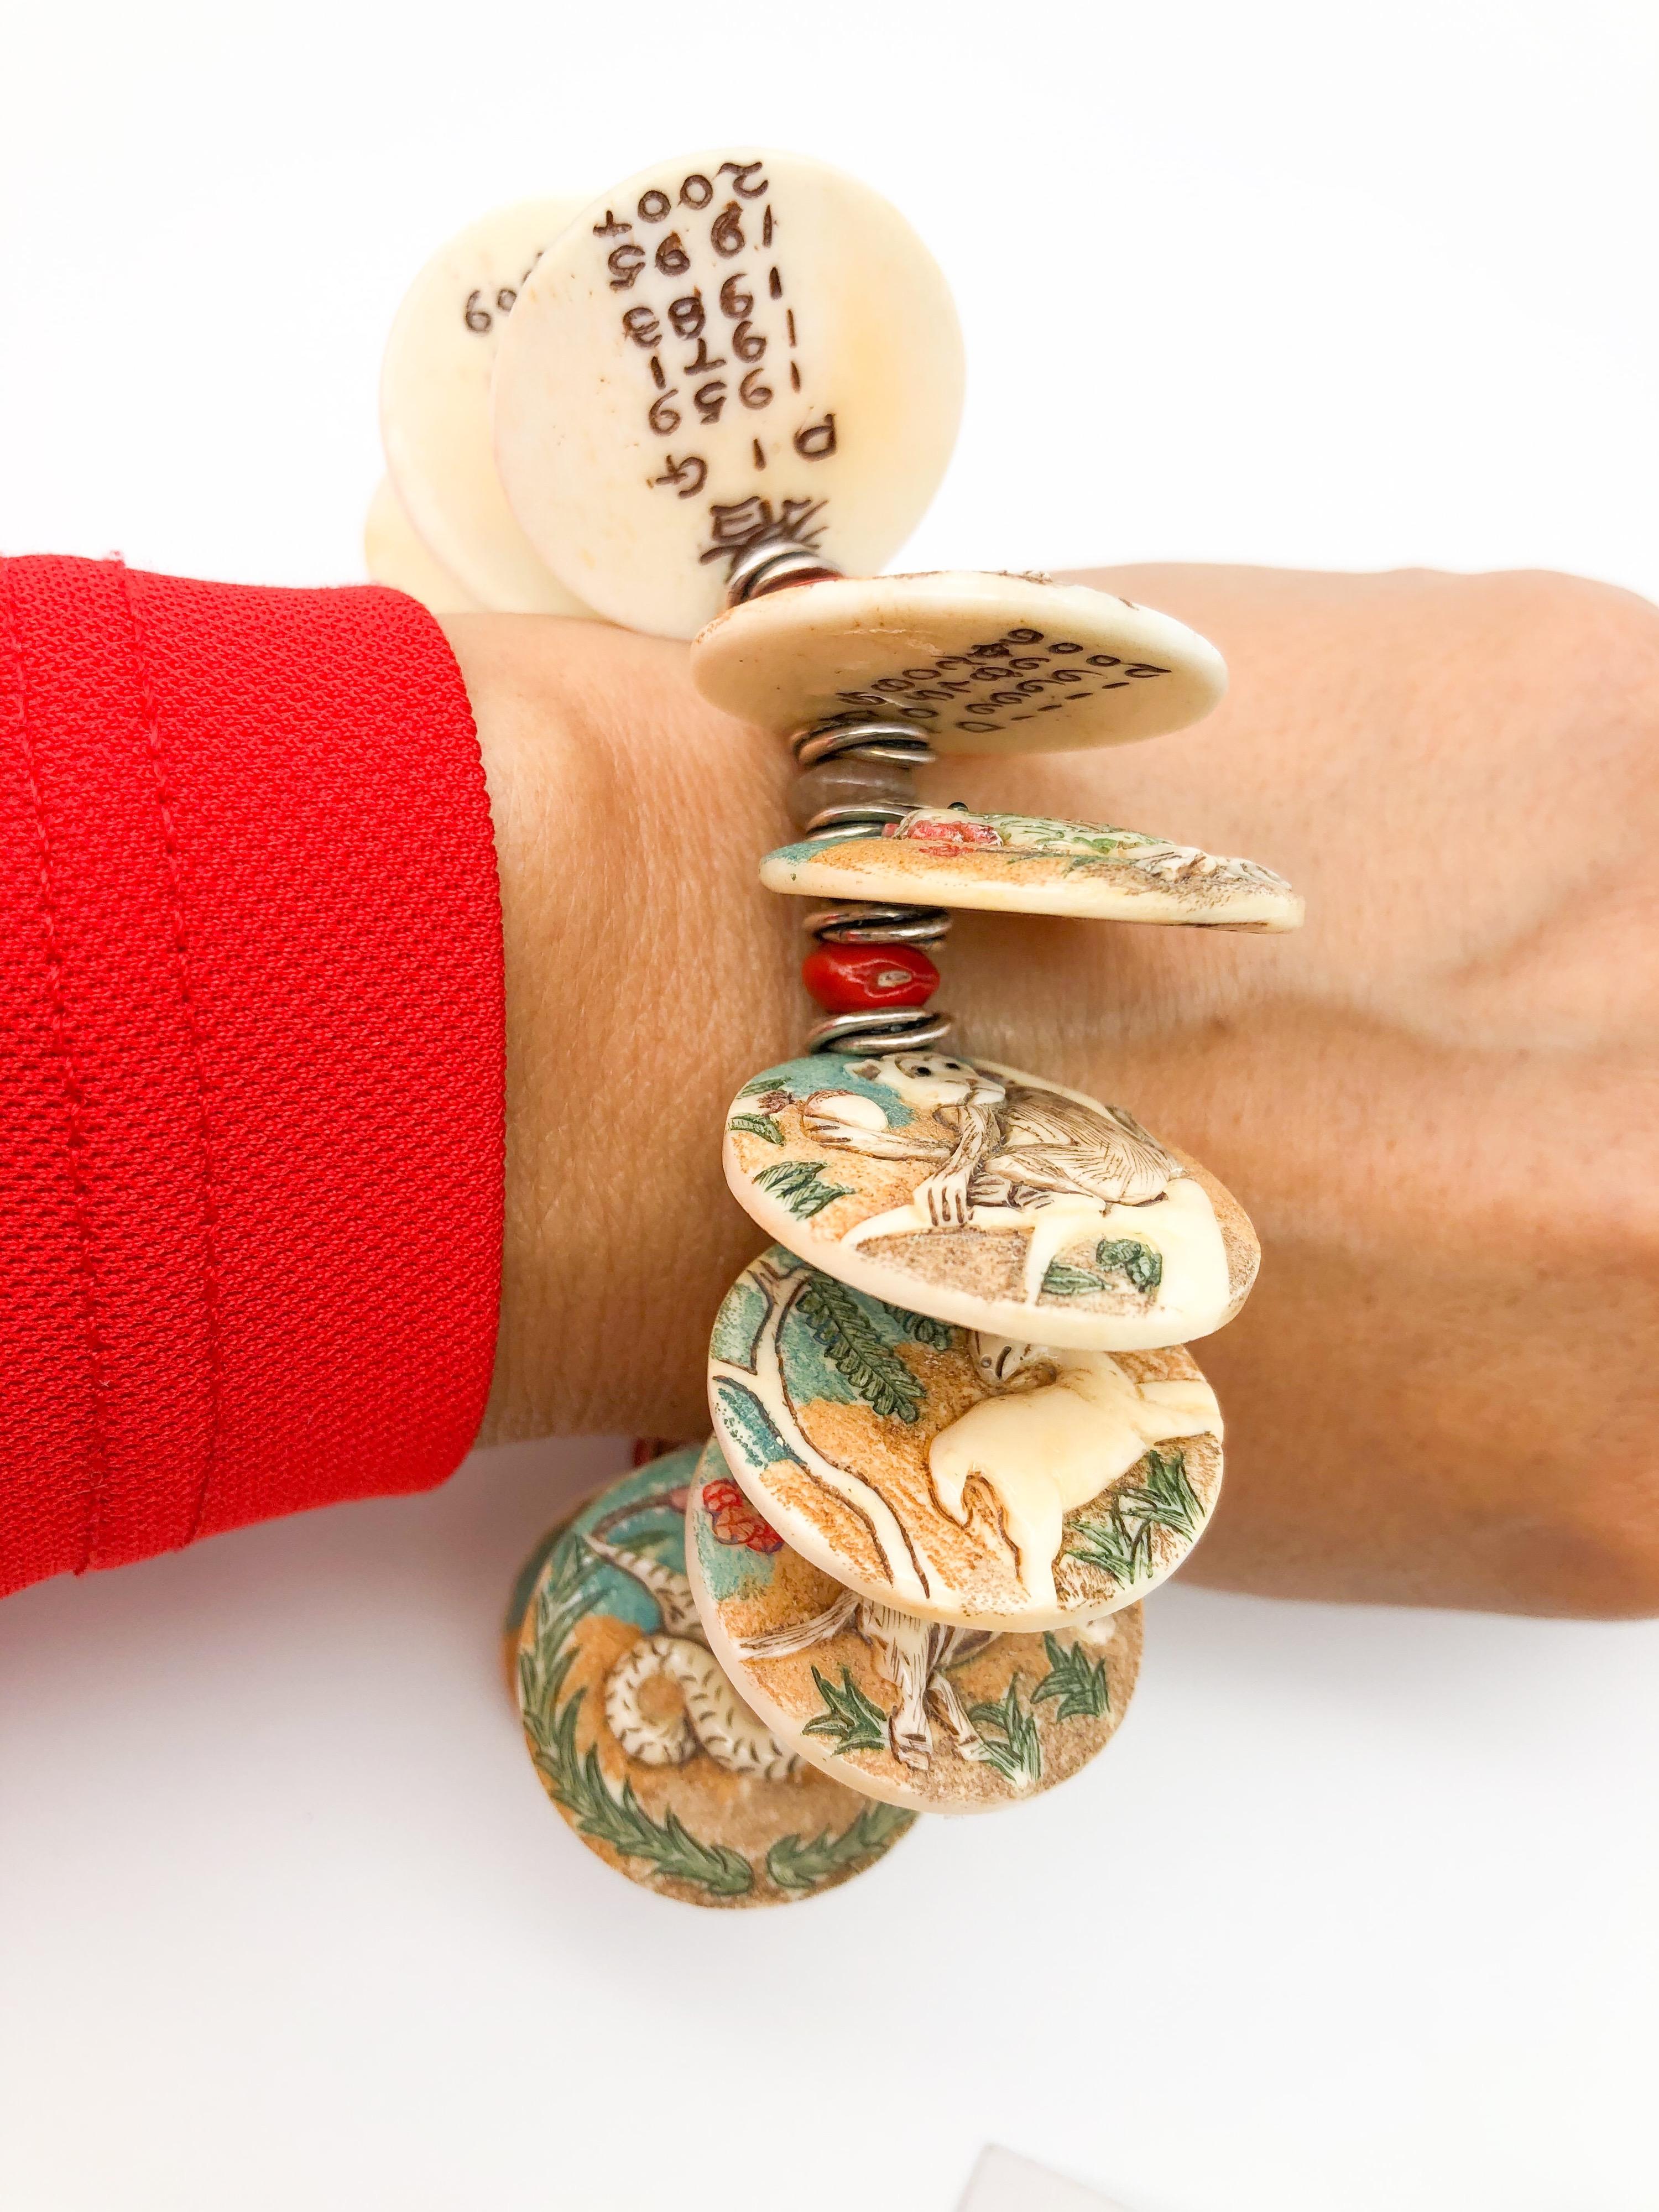 Unique en son genre
D'une beauté exquise. Bracelet à breloques chinoises décoré d'animaux colorés en os sculptés, peints à la main, représentant les 12 signes du zodiaque chinois. Les douze os gravés du zodiaque peints à la main sont séparés par de